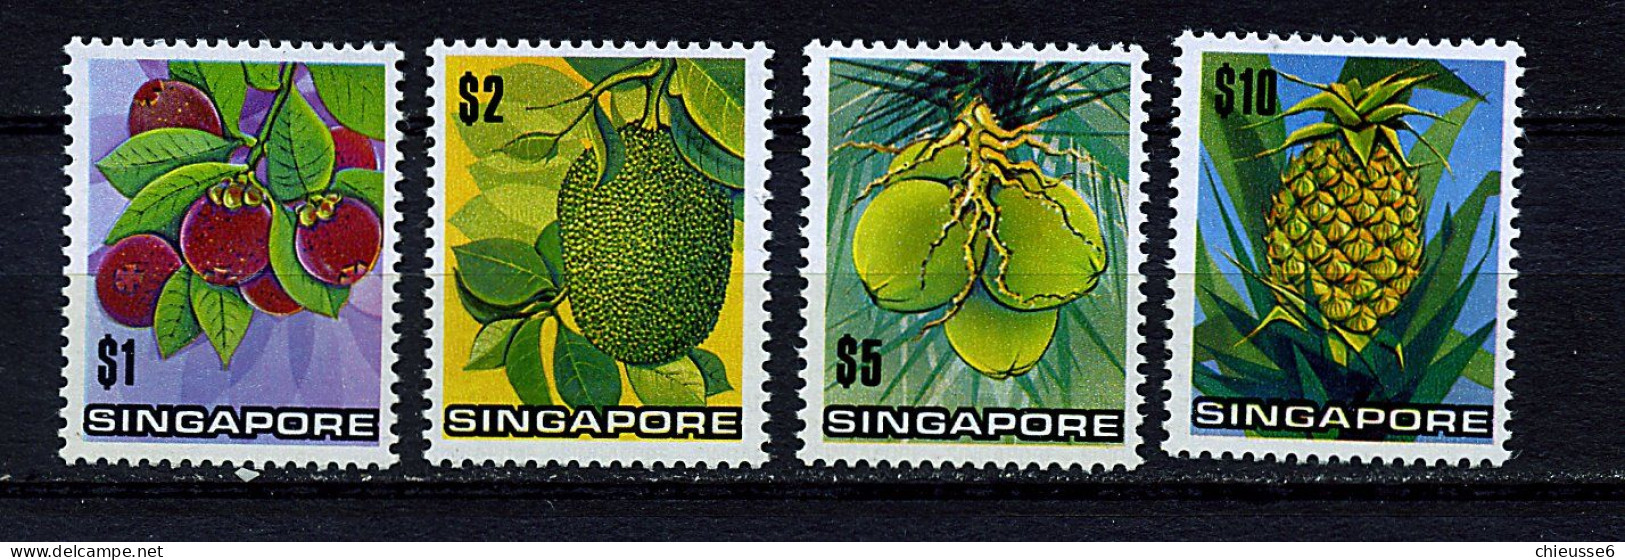 Singapour ** N° 1794 à 1798 - Fruits - Singapore (1959-...)